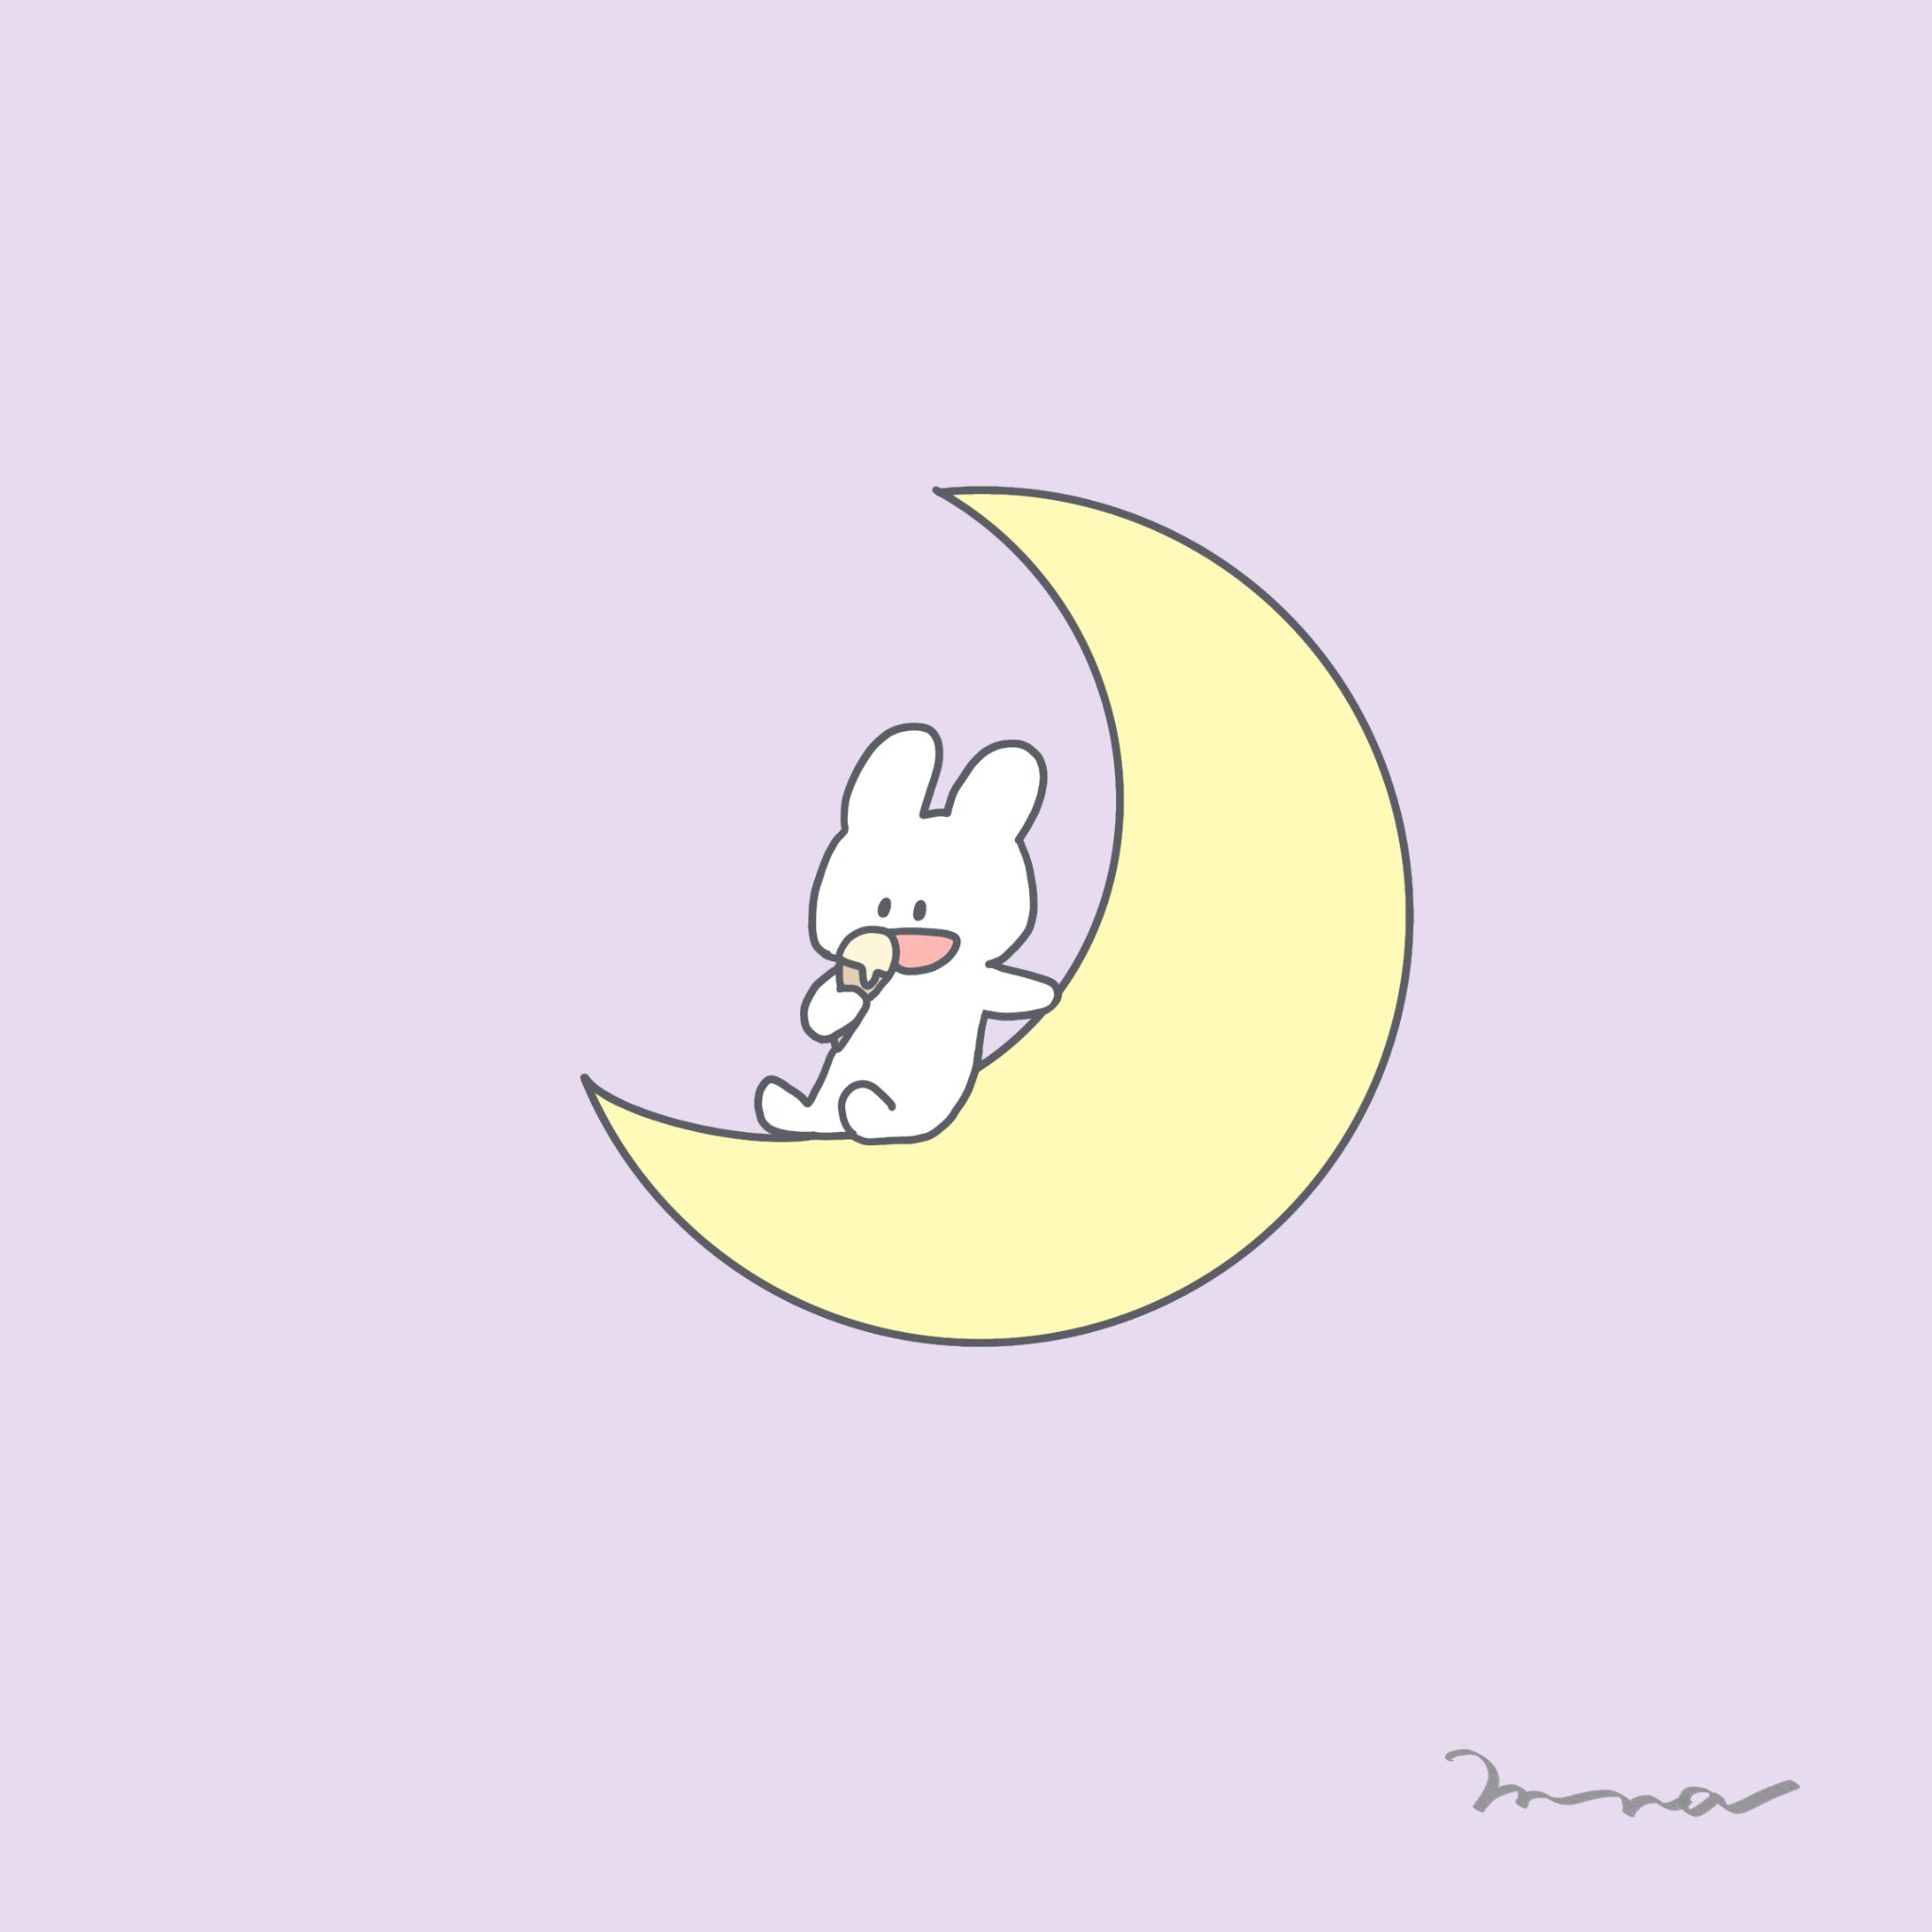 توییتر Miina ミイナ イラスト در توییتر 久しぶりのうさぎ ストーリー 壁紙 シンプルイラスト ゆるいイラスト イラスト 線画 絵描きさんと繋がりたい イラスト好きな人と繋がりたい パステル パステルカラー うさぎ 月 アイス Rabbit Moon